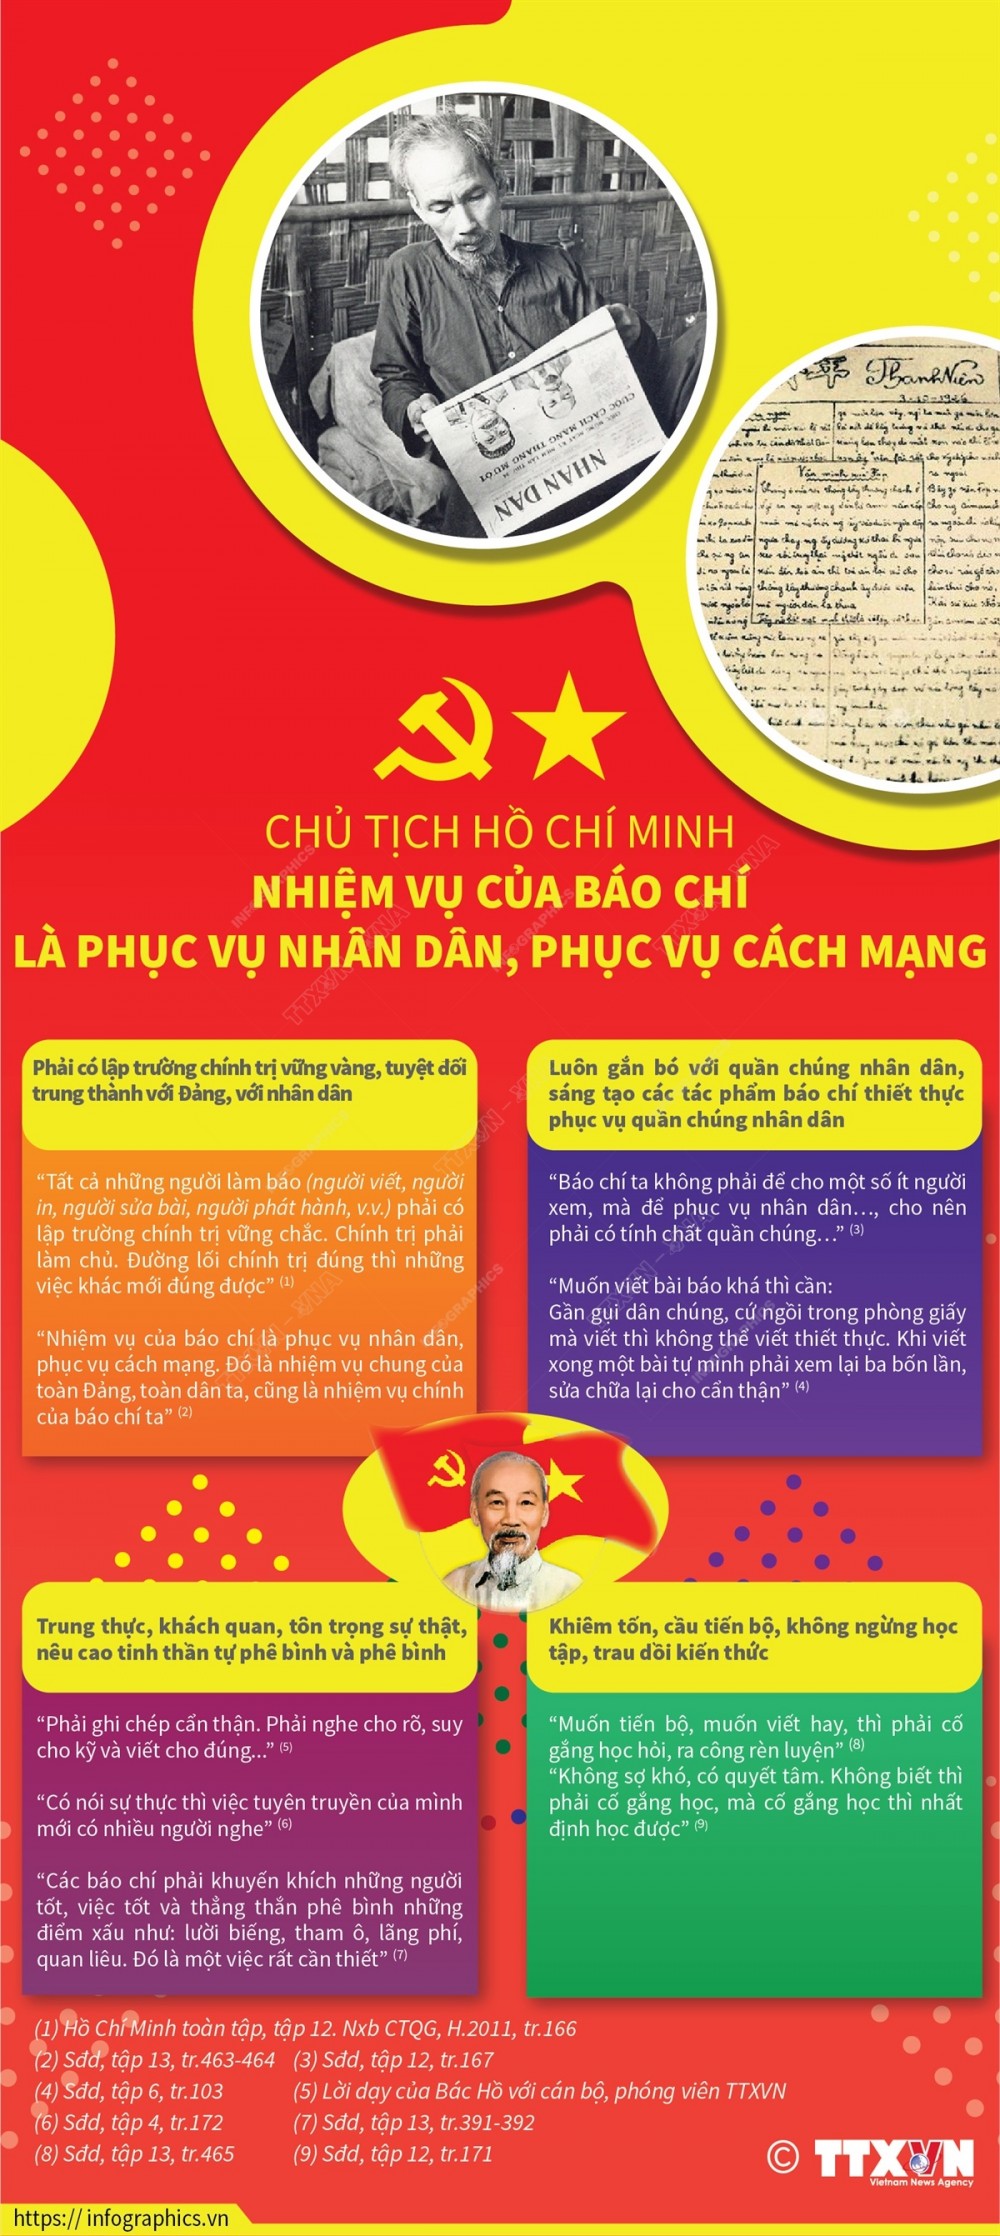 Những lời dạy của Chủ tịch Hồ Chí Minh mãi là “kim chỉ nam” cho các thế hệ nhà báo, cơ quan báo chí trong quá trình tu dưỡng, phấn đấu, trưởng thành và lớn mạnh, luôn giữ “tâm sáng, lòng trong, bút sắc”. 